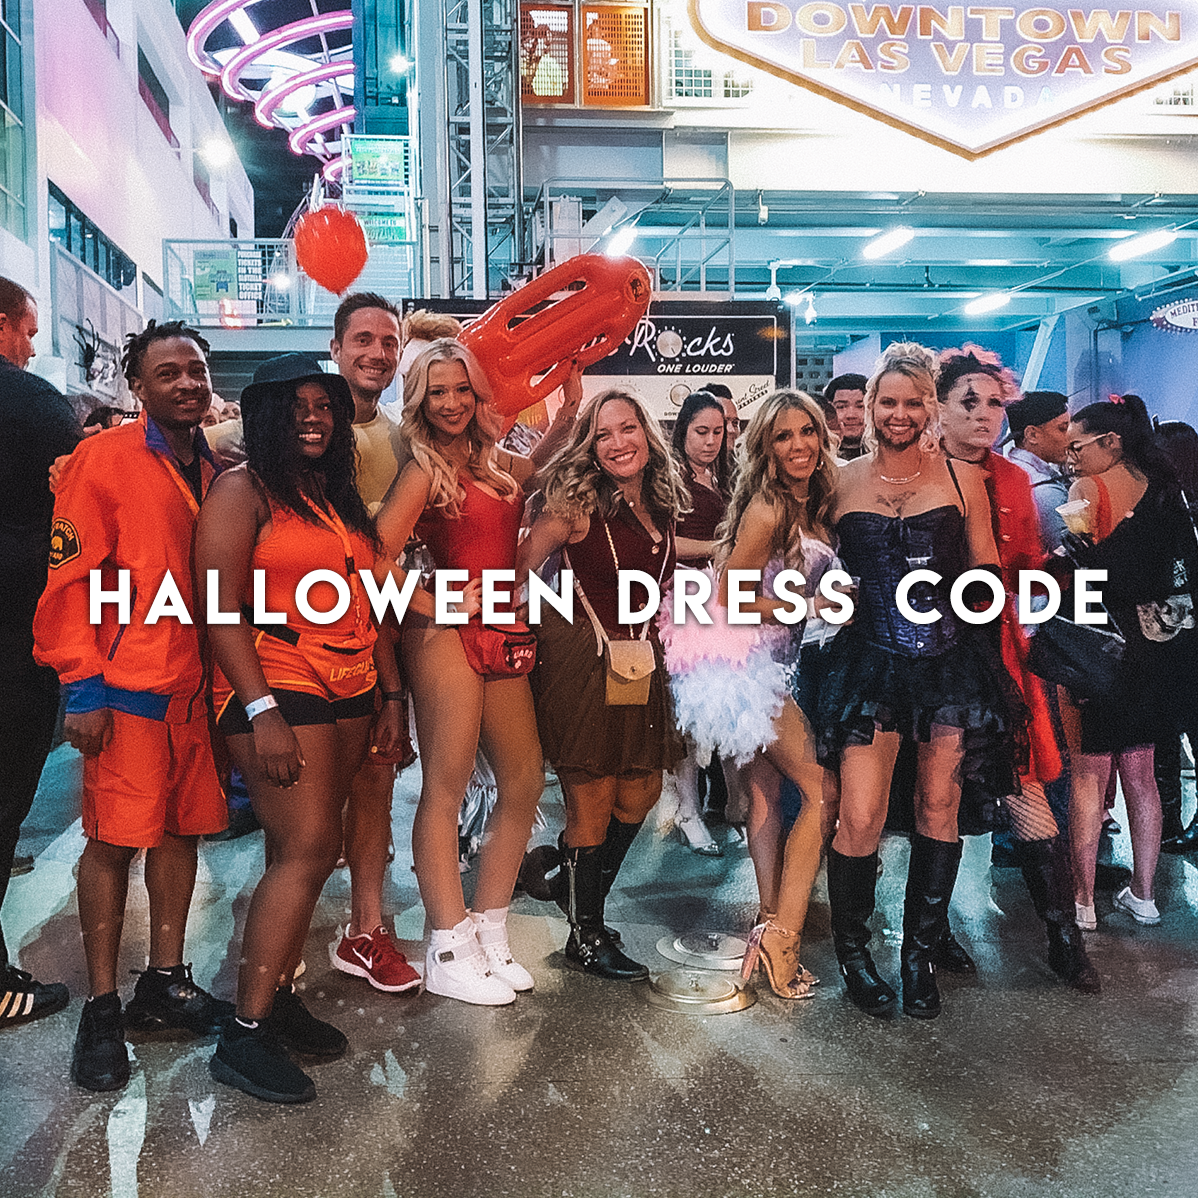 Shoes That Meet The Nightclub Dress Code In Las Vegas